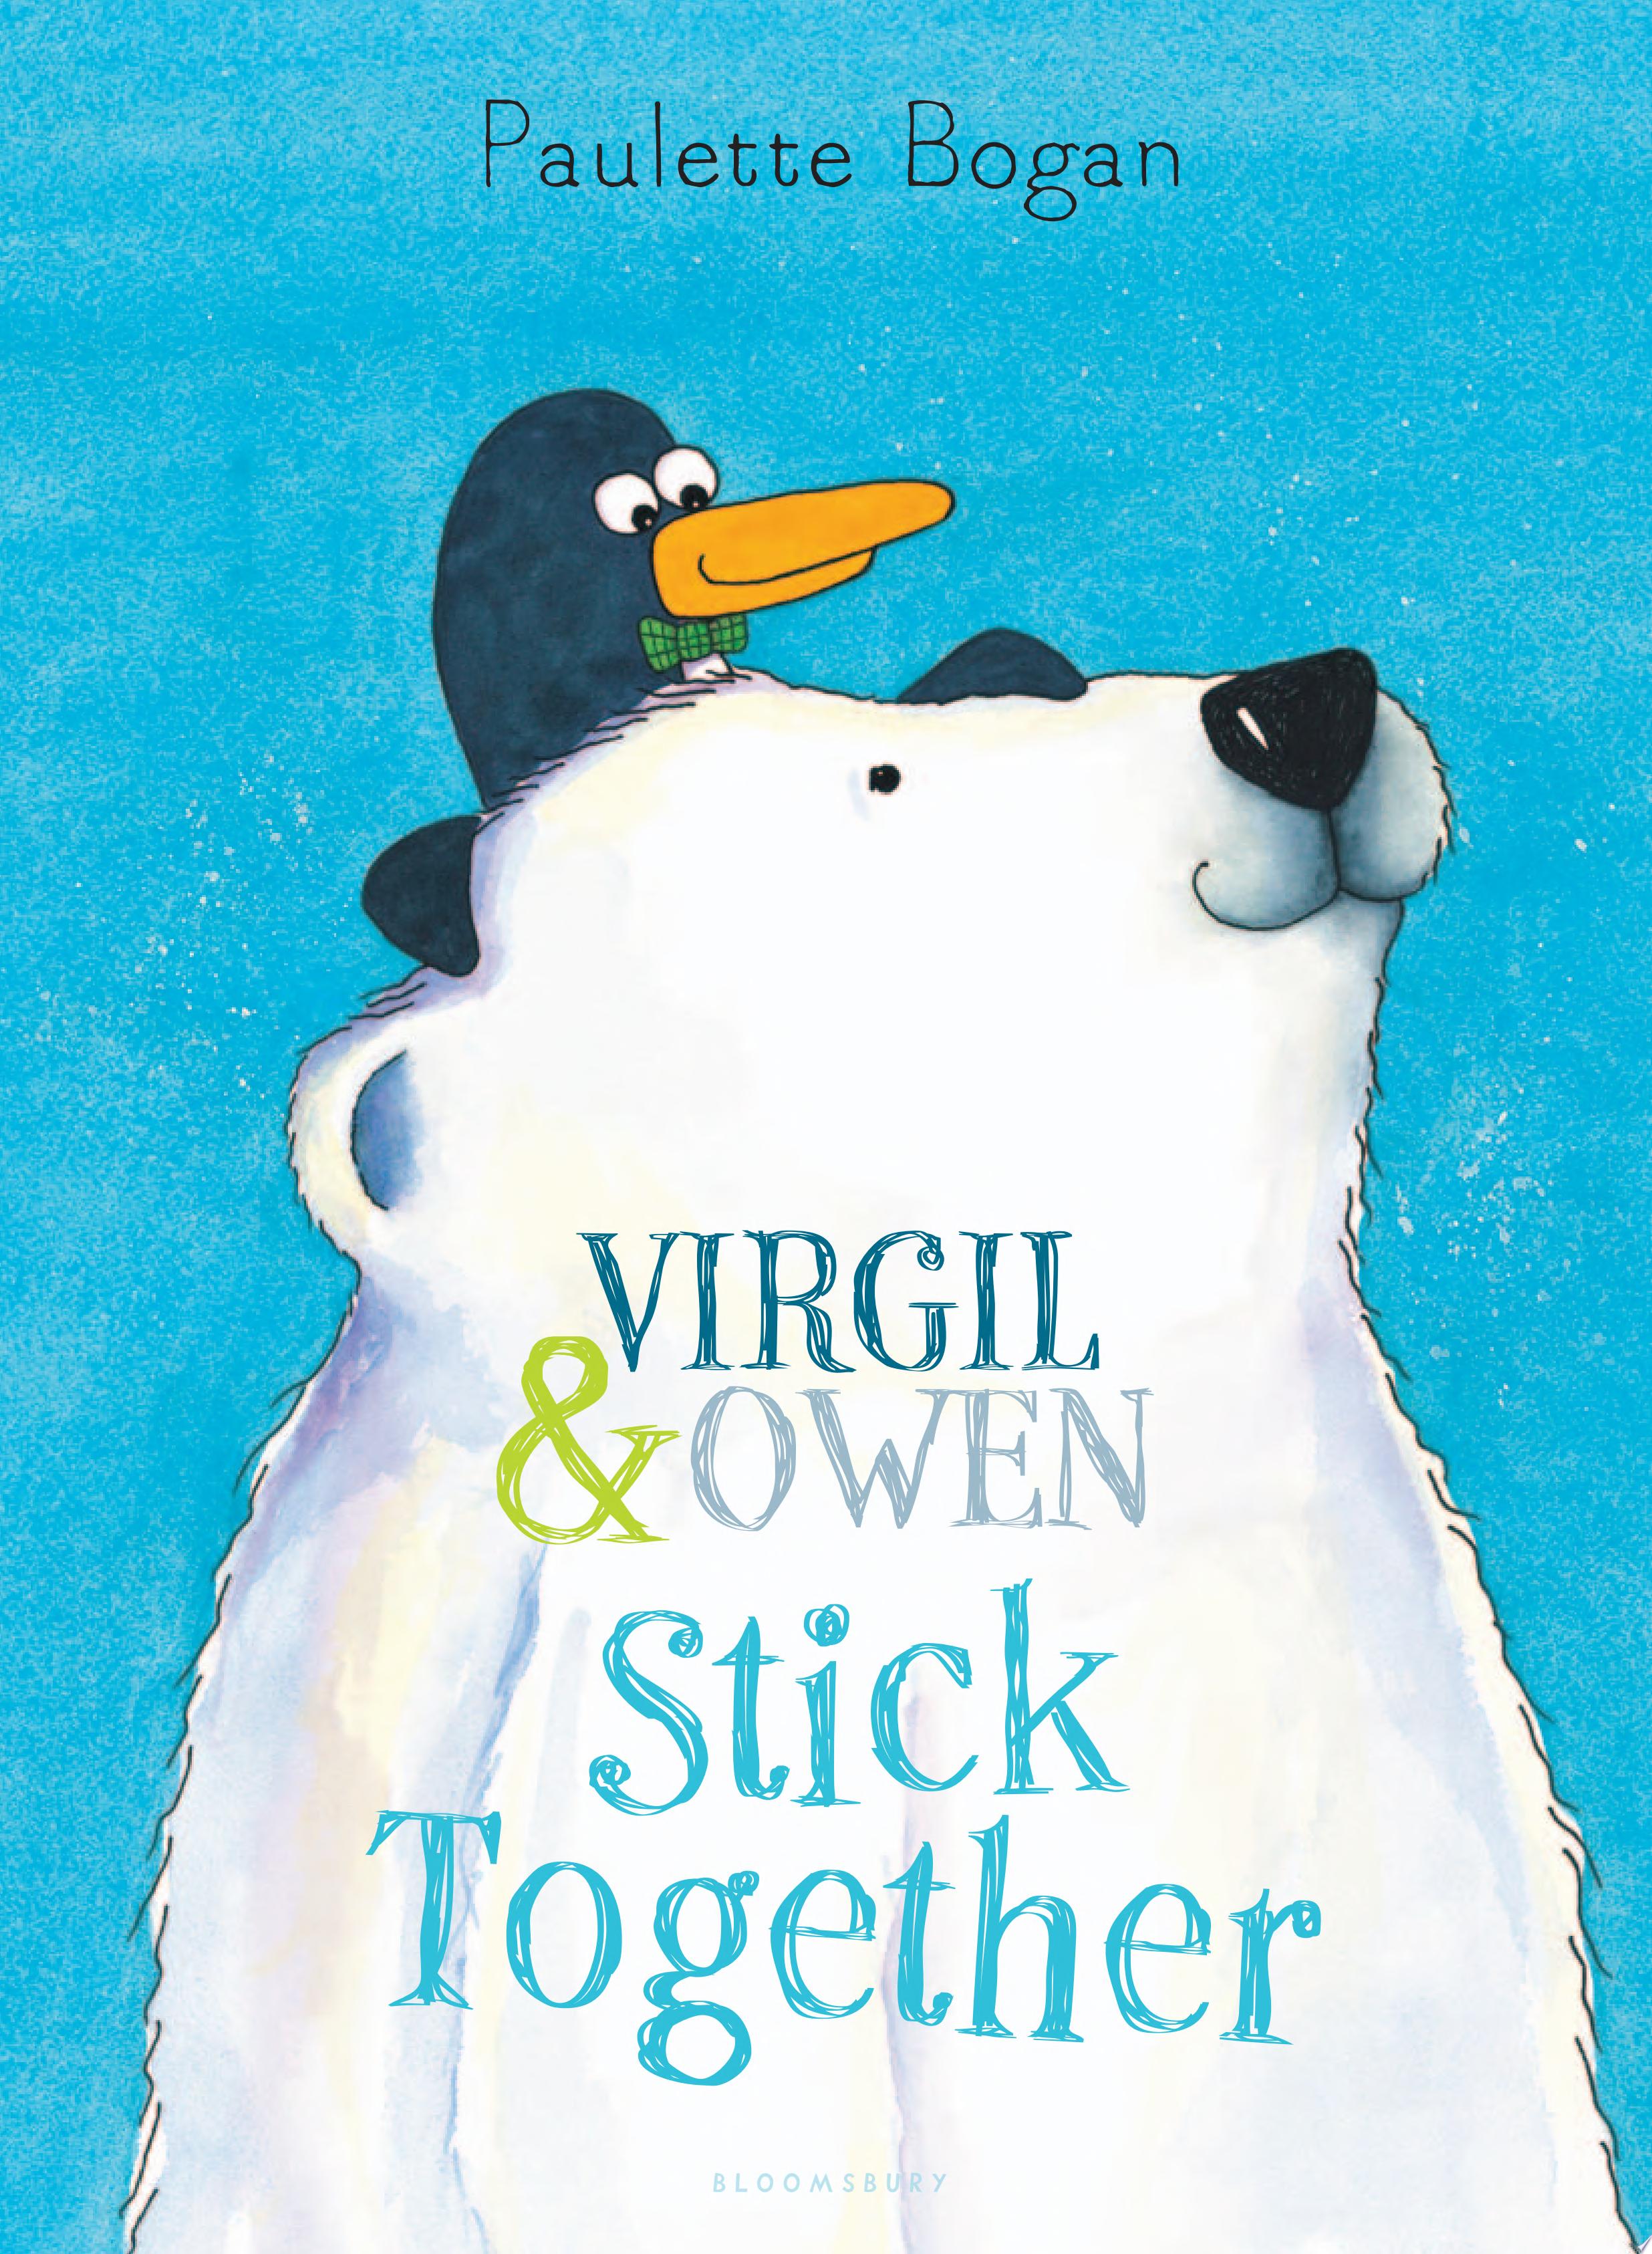 Image for "Virgil & Owen Stick Together"